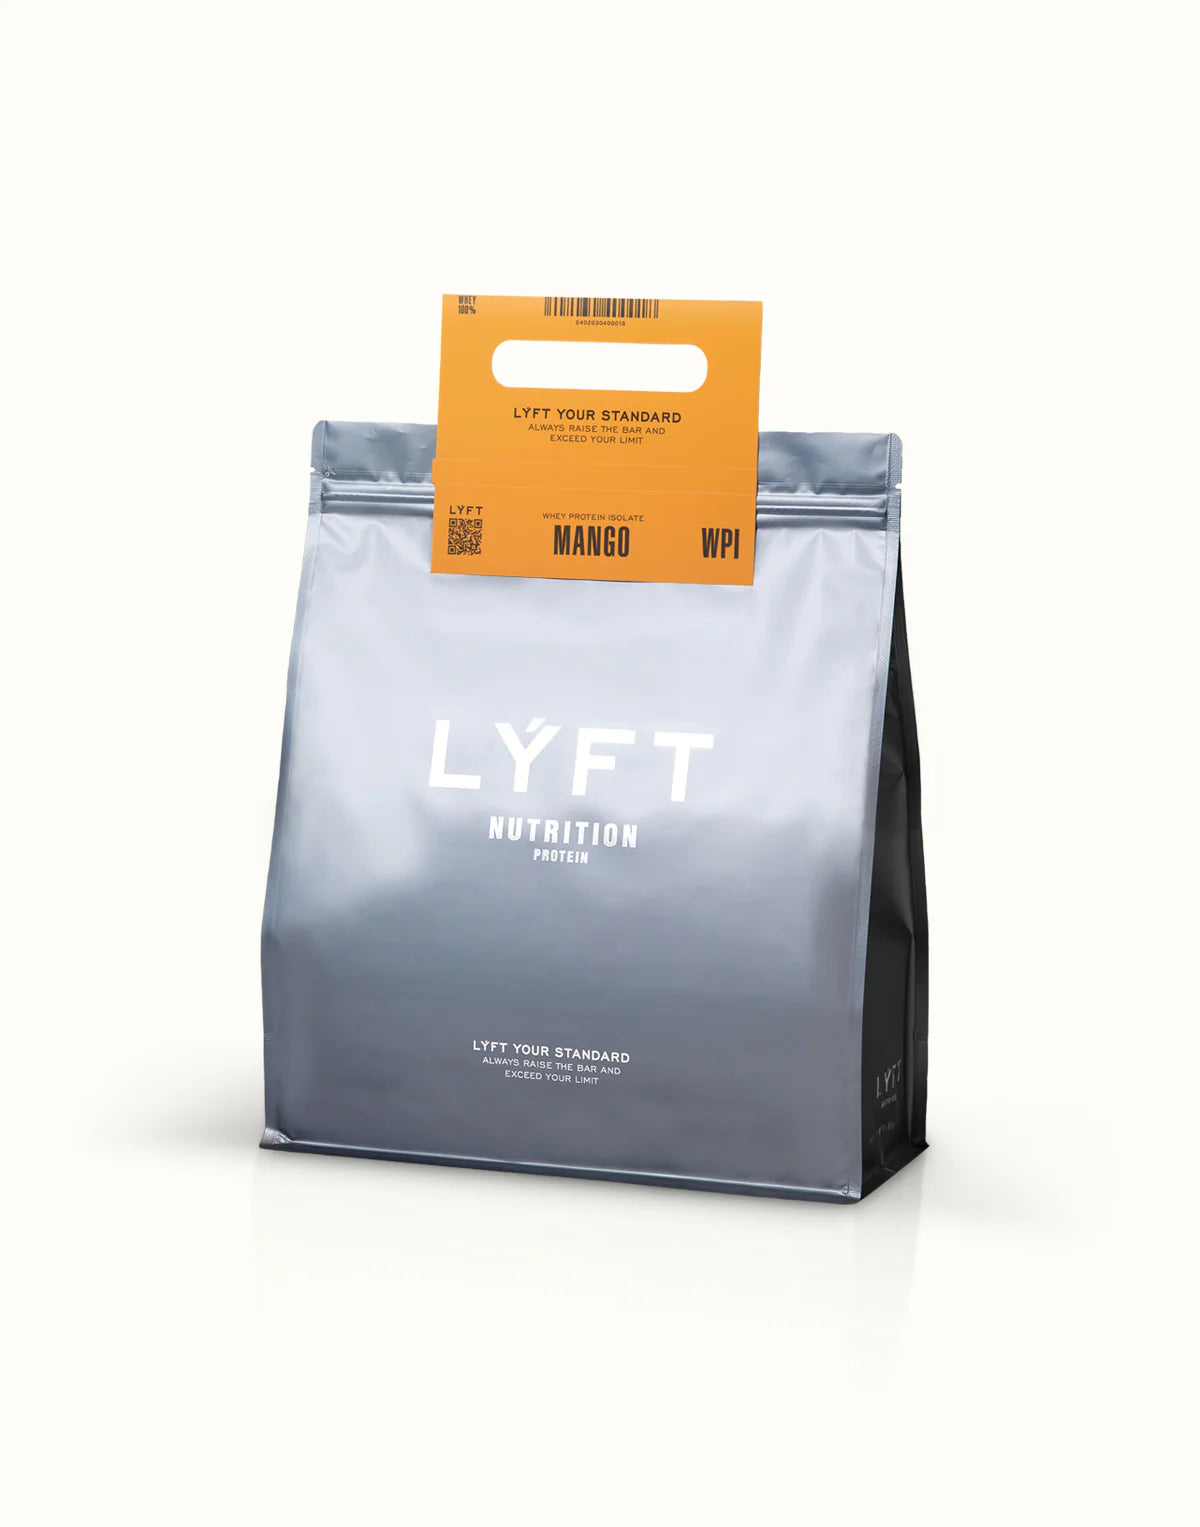 LYFT（リフト）プロテイン飲み比べレビューとおすすめランキング